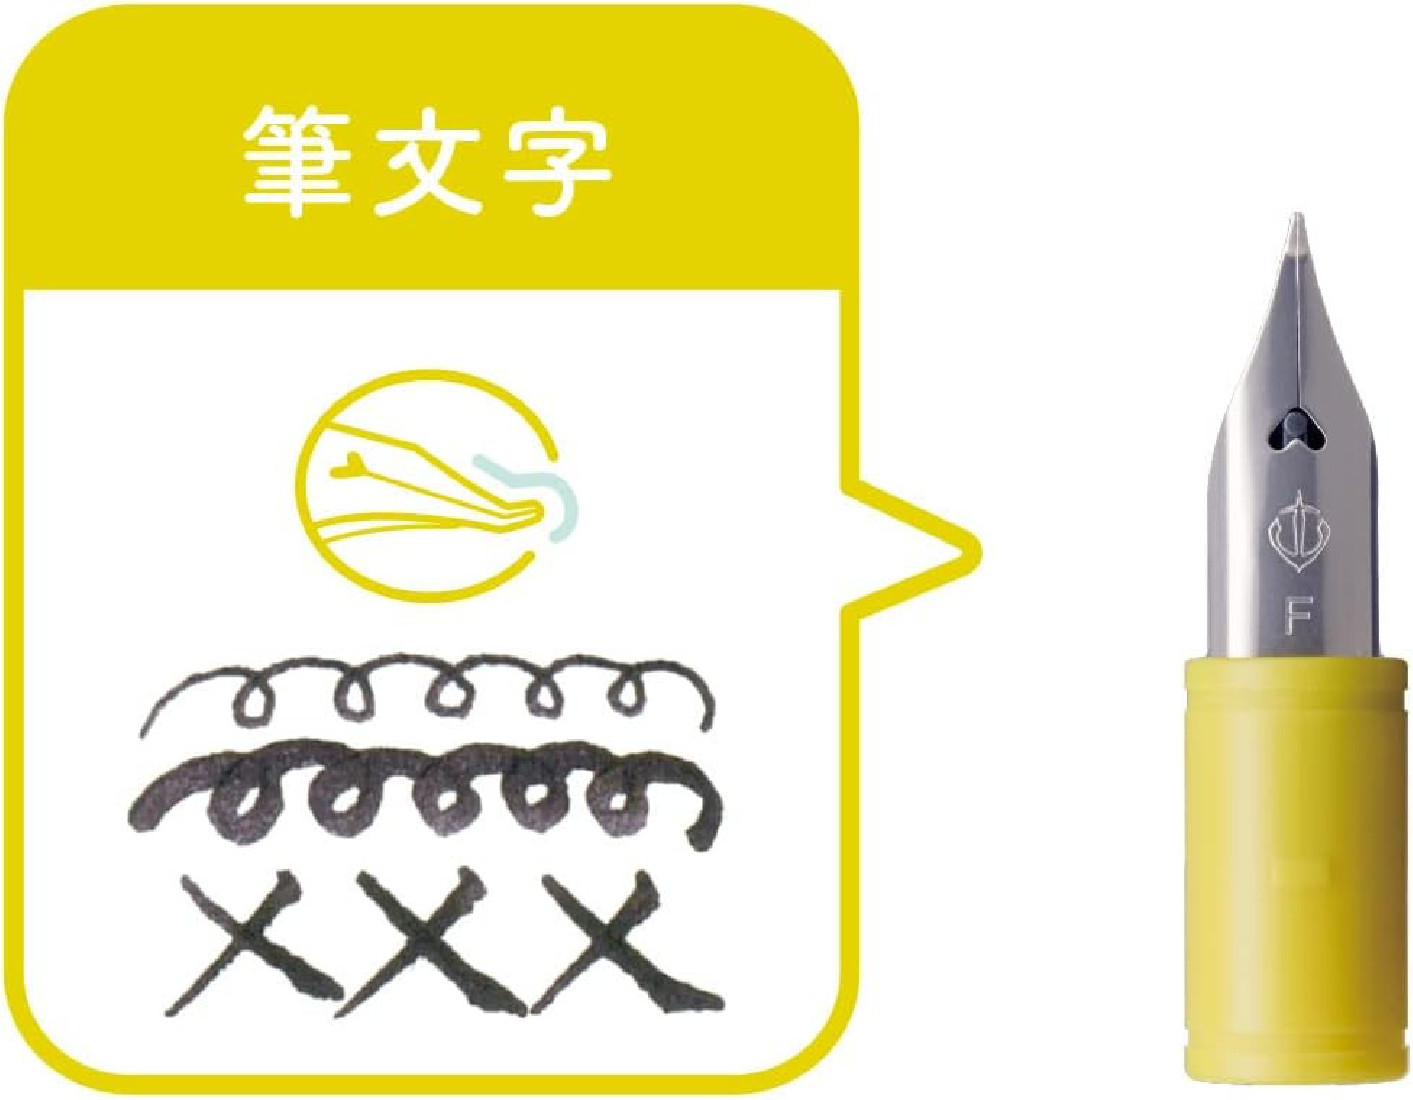 Sailor  fountain pen hocoro replacement tip calligraphy Fude 87-0853-700